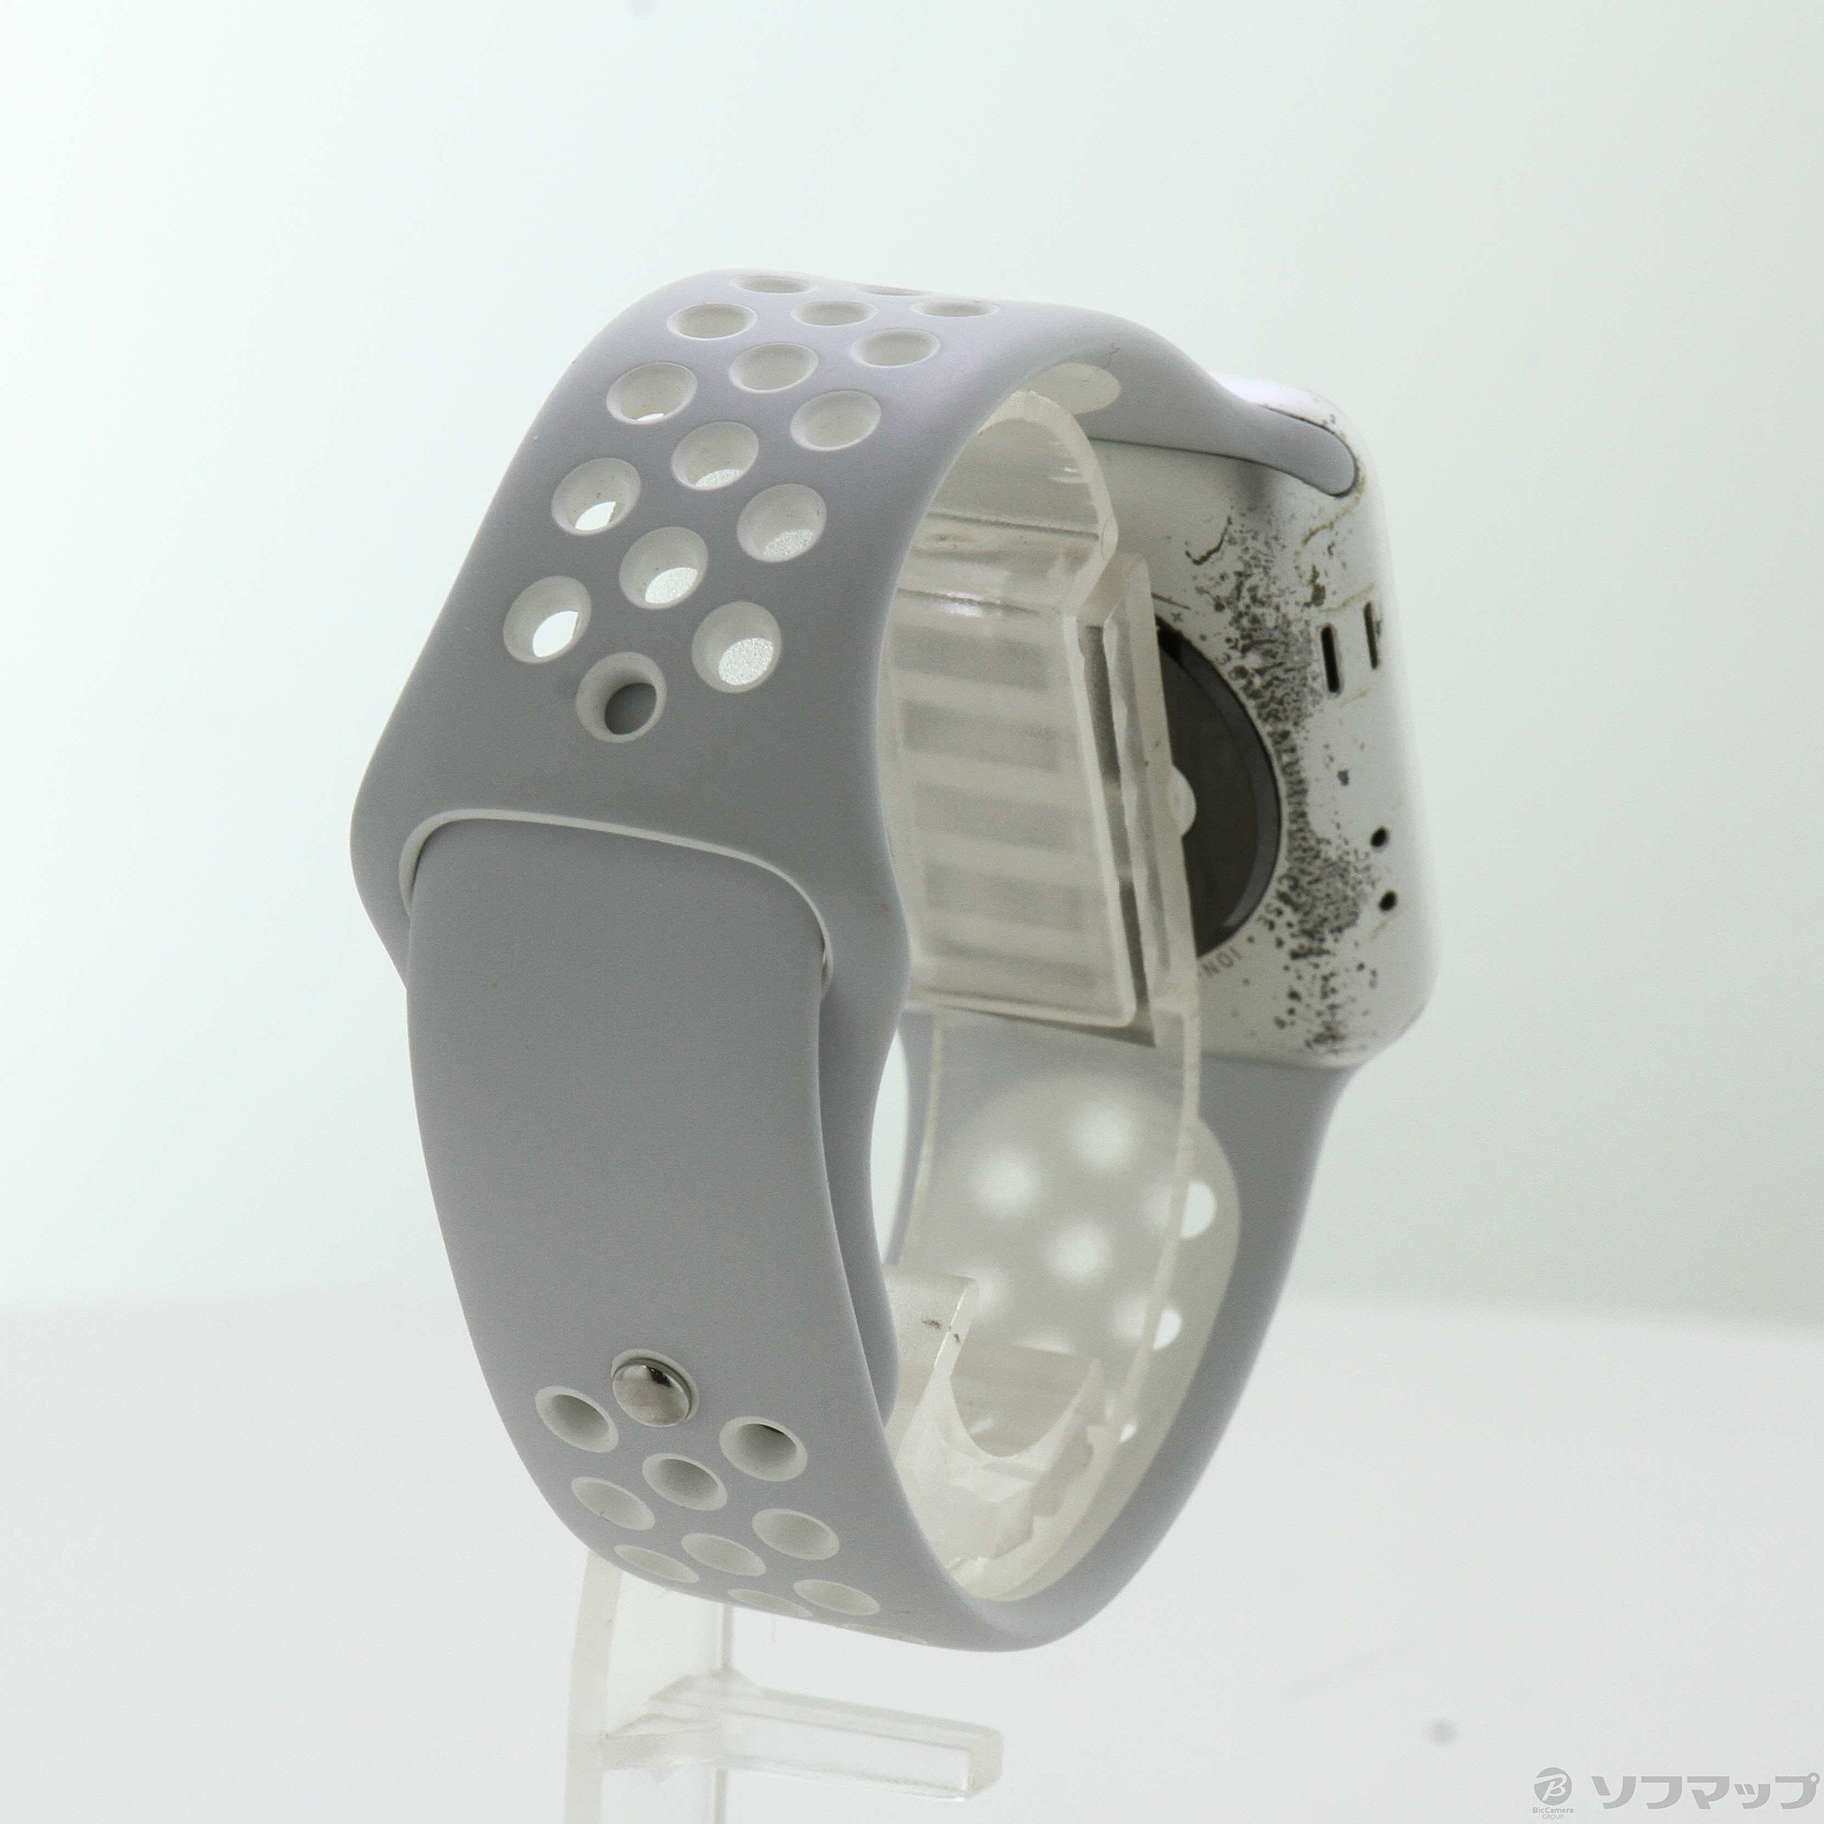 中古】Apple Watch Series 2 Nike+ 38mm シルバーアルミニウムケース